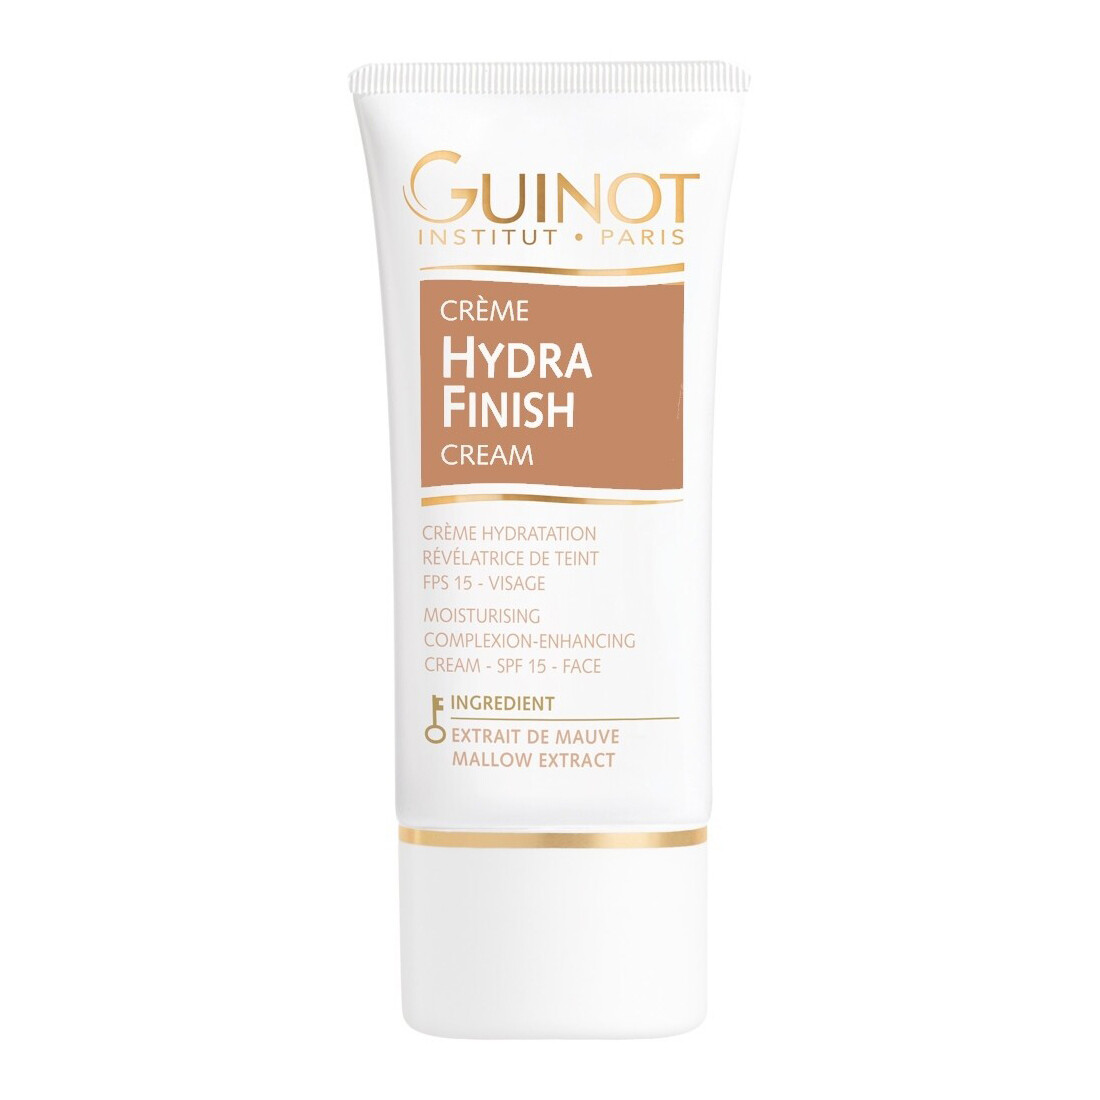 GUINOT Crème Hydra Finish Soin Hydratant Révélateur de Lumière ( 30ml ) |  FANTSYKA